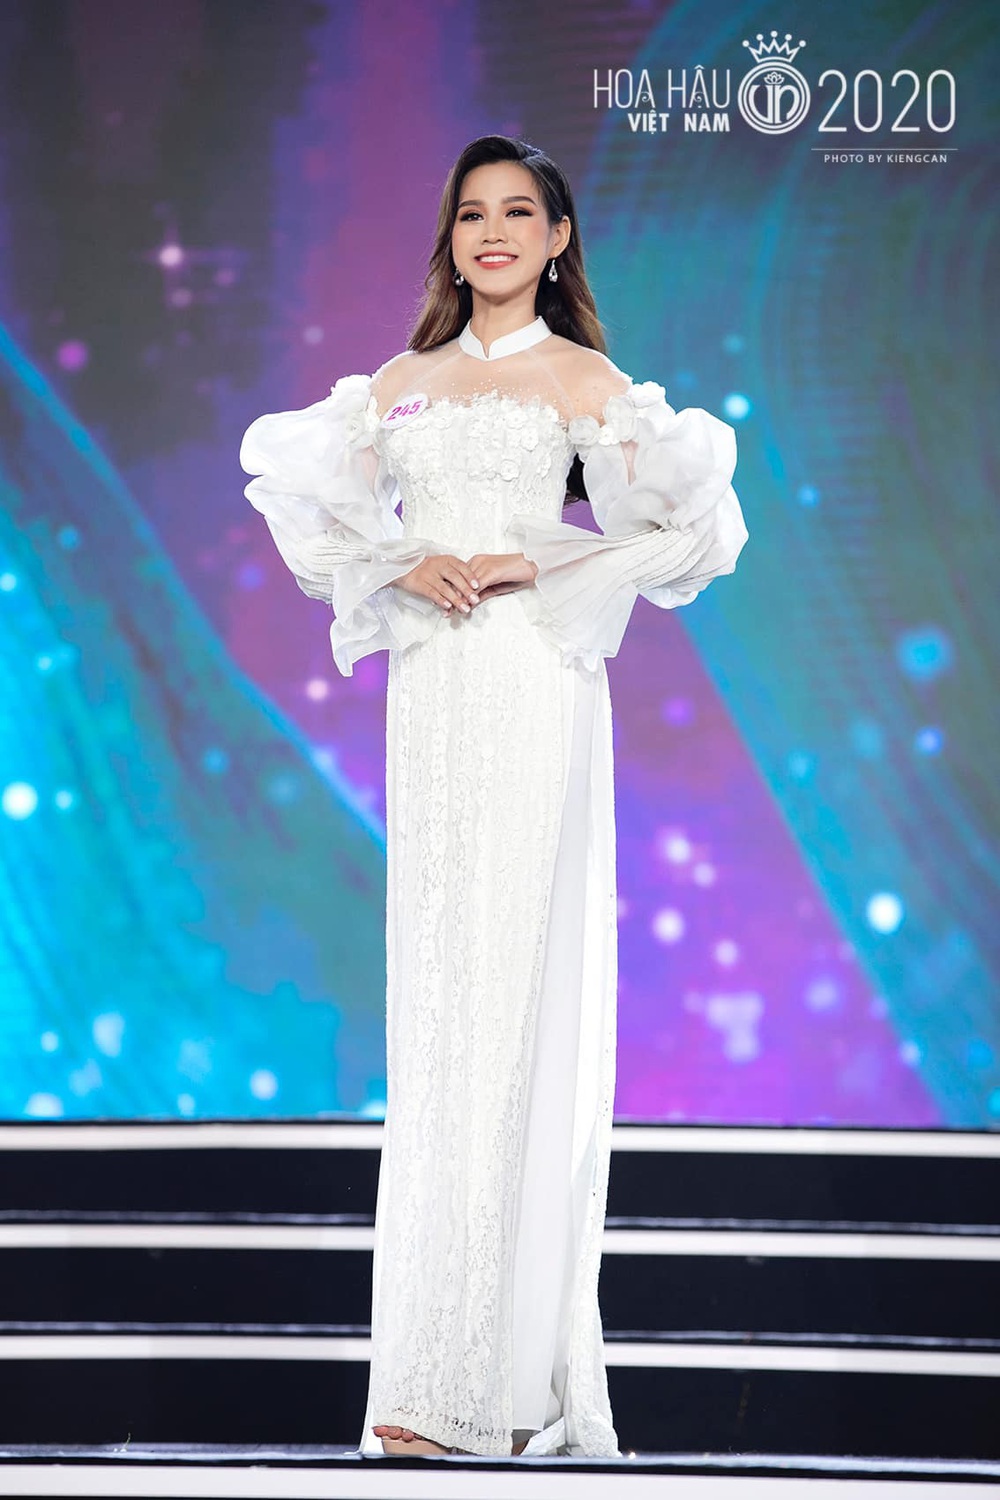 Hành trình từ nữ sinh Thanh Hóa đến tân Hoa hậu Việt Nam 2020 của Đỗ Thị Hà - Ảnh 10.